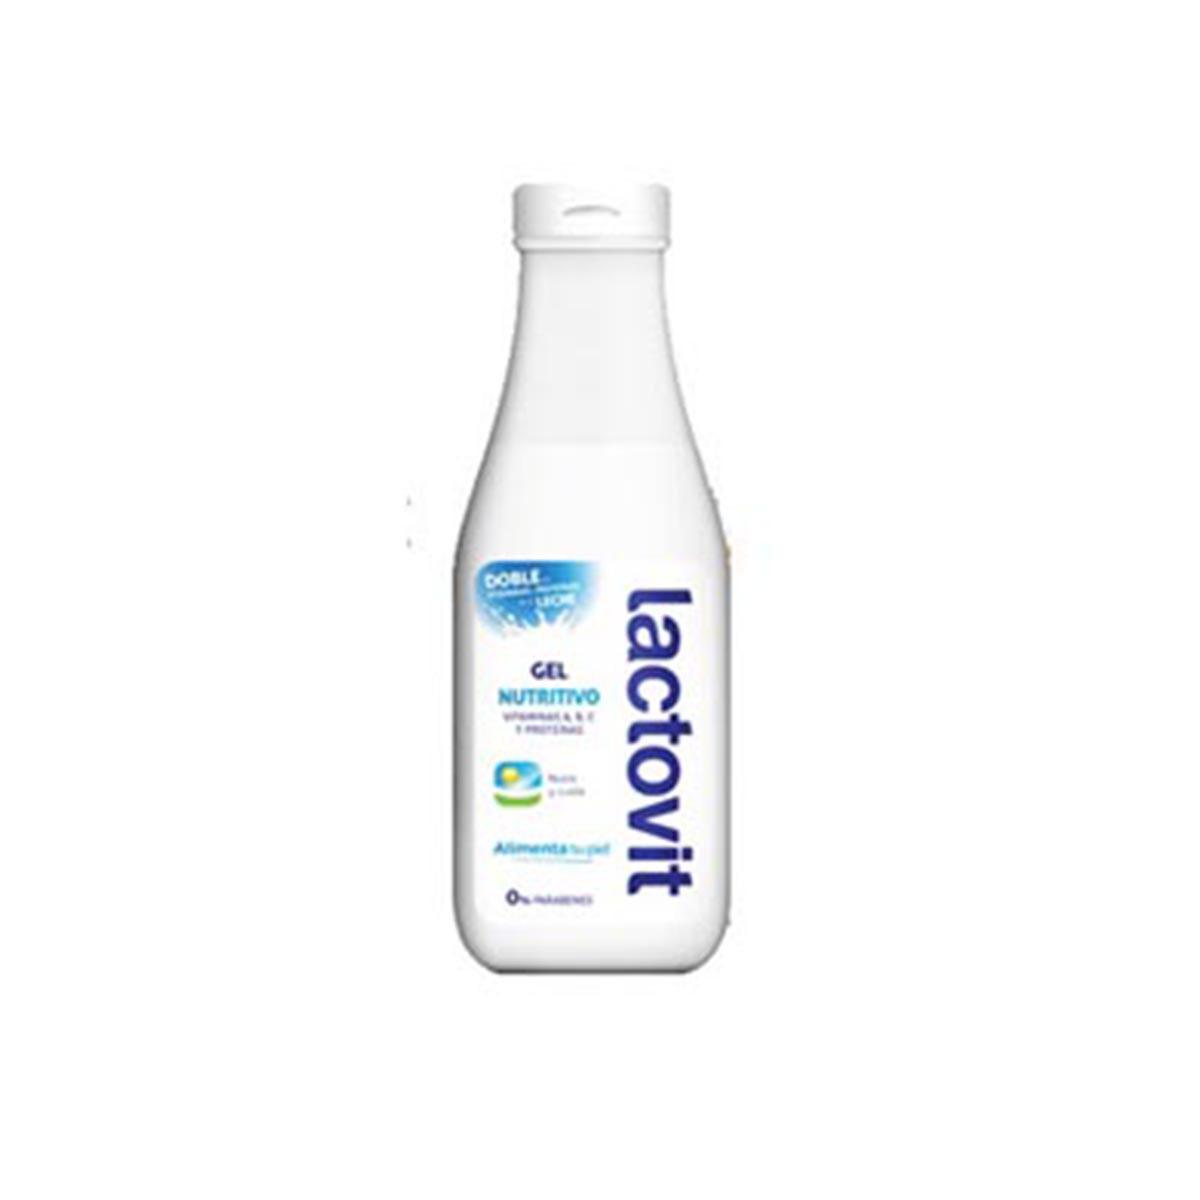 lactovit-shower-gel-nutritive-600ml-120ml